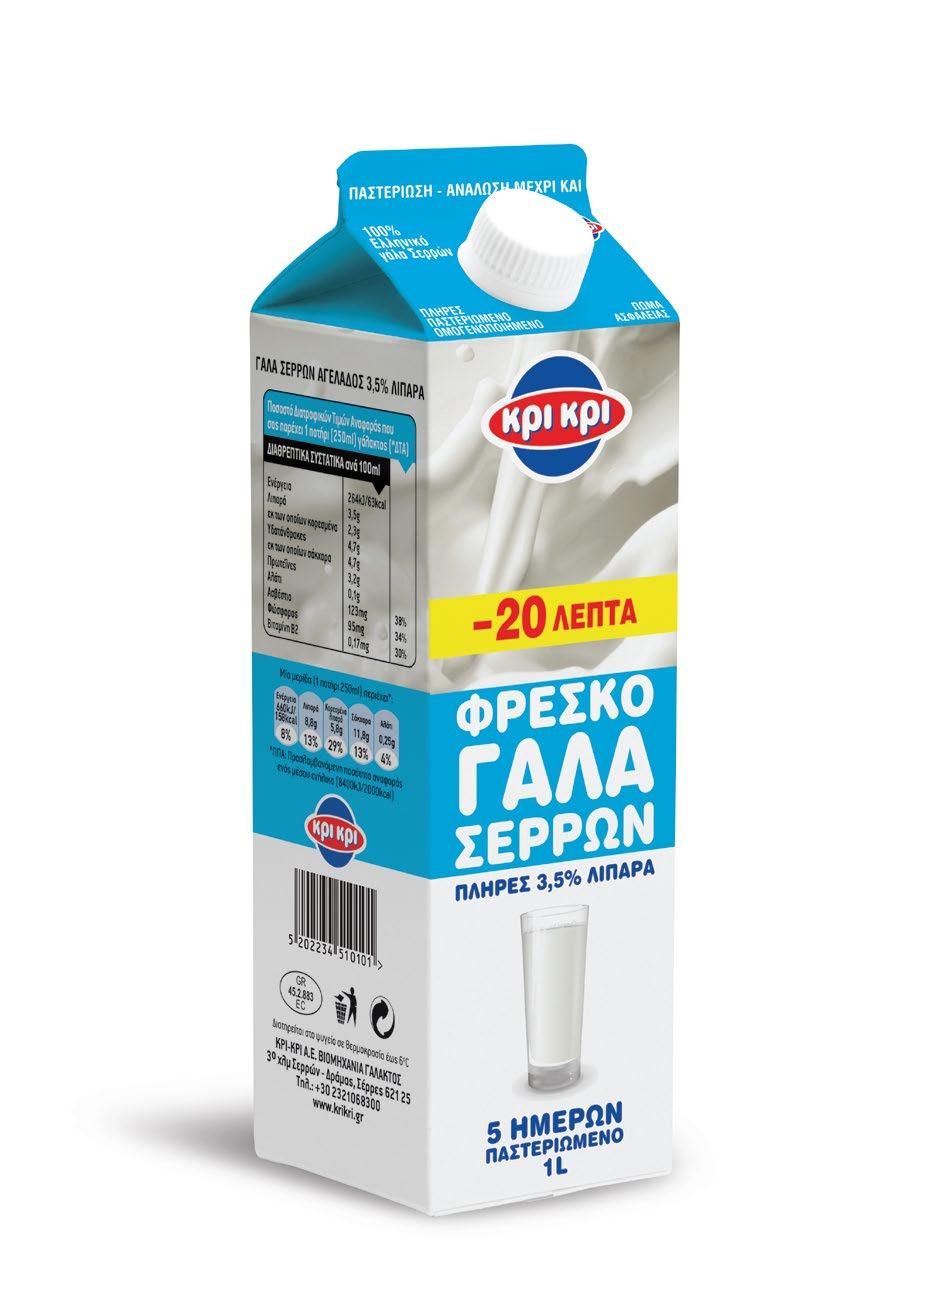 Γινόµαστε καλύτεροι καταναλωτές. Προγραµµατίζουµε µια επίσκεψη στο super market της περιοχής µας. Επικεντρώνουµε το ενδιαφέρον µας στο τµήµα που αφορά στο γάλα και τα γιαούρτια.